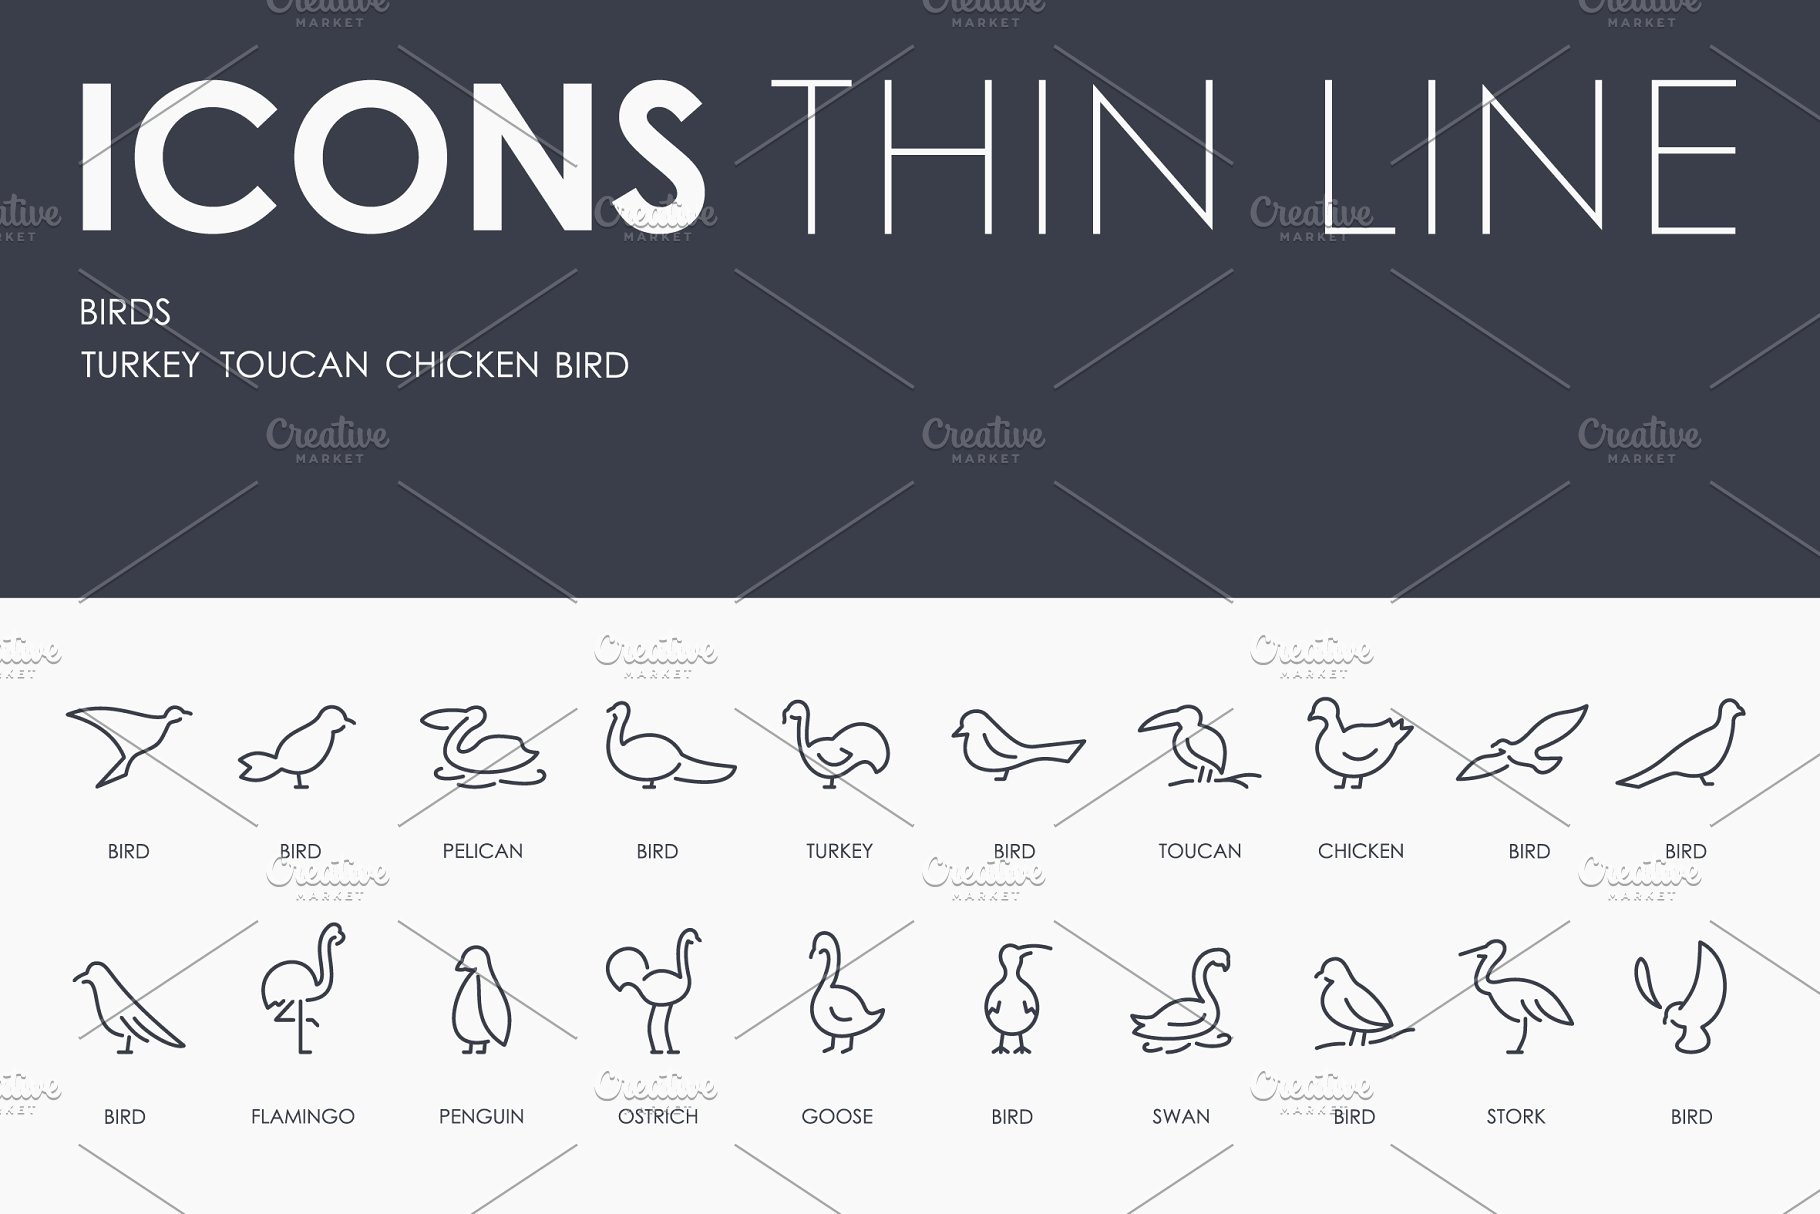 鸟类矢量图标素材 Birds thinline icons